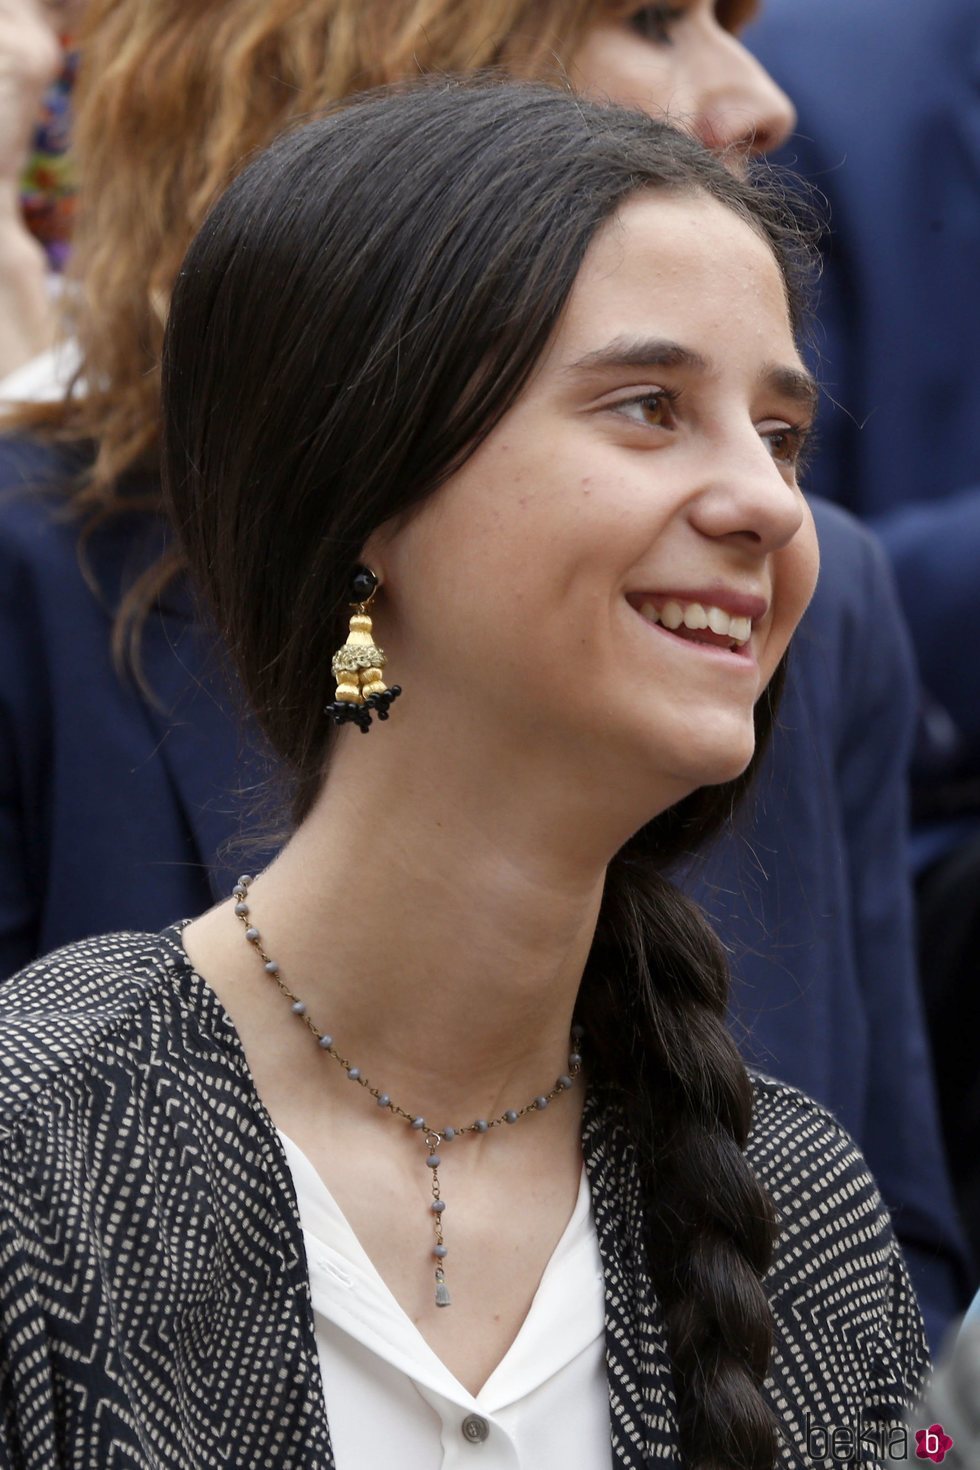 Victoria Federica de Marichalar muy sonriente en una corrida de toros en Las Ventas en 2018